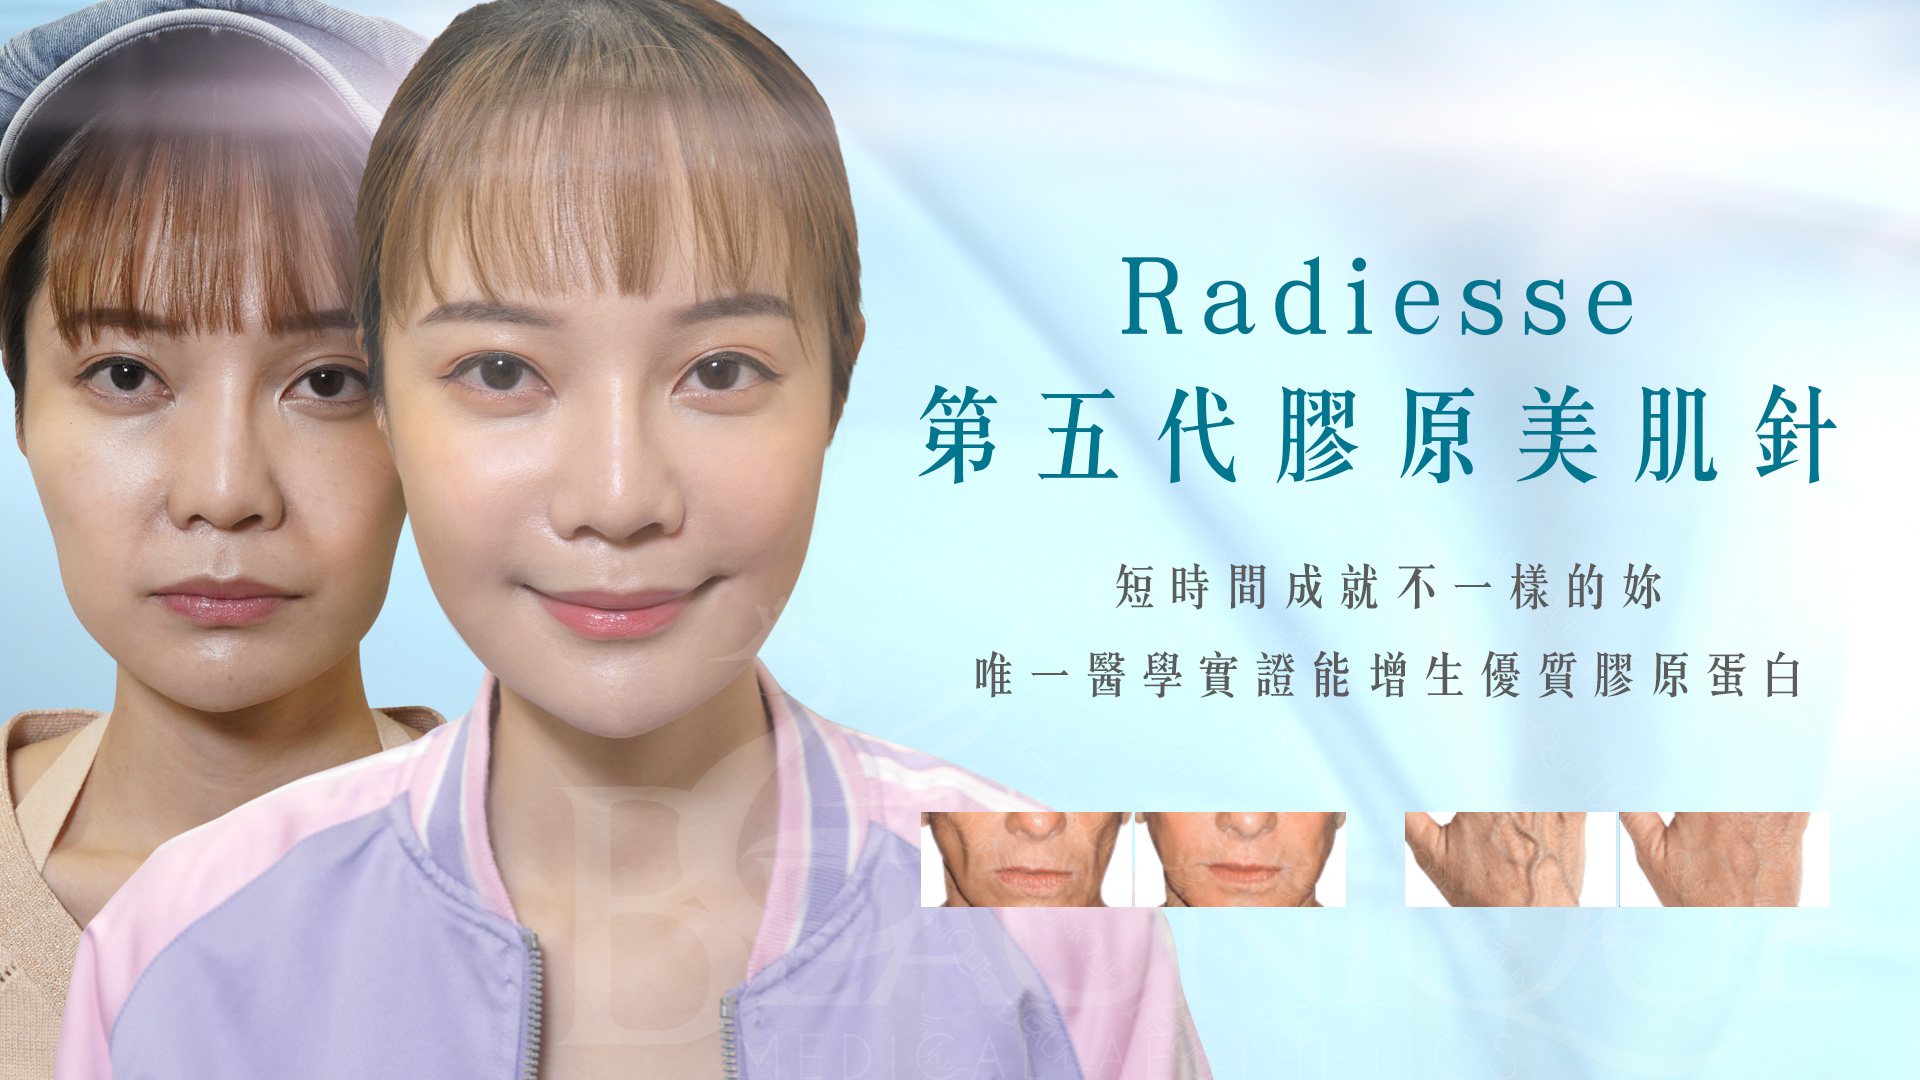 Radiesse 2 - Homepage